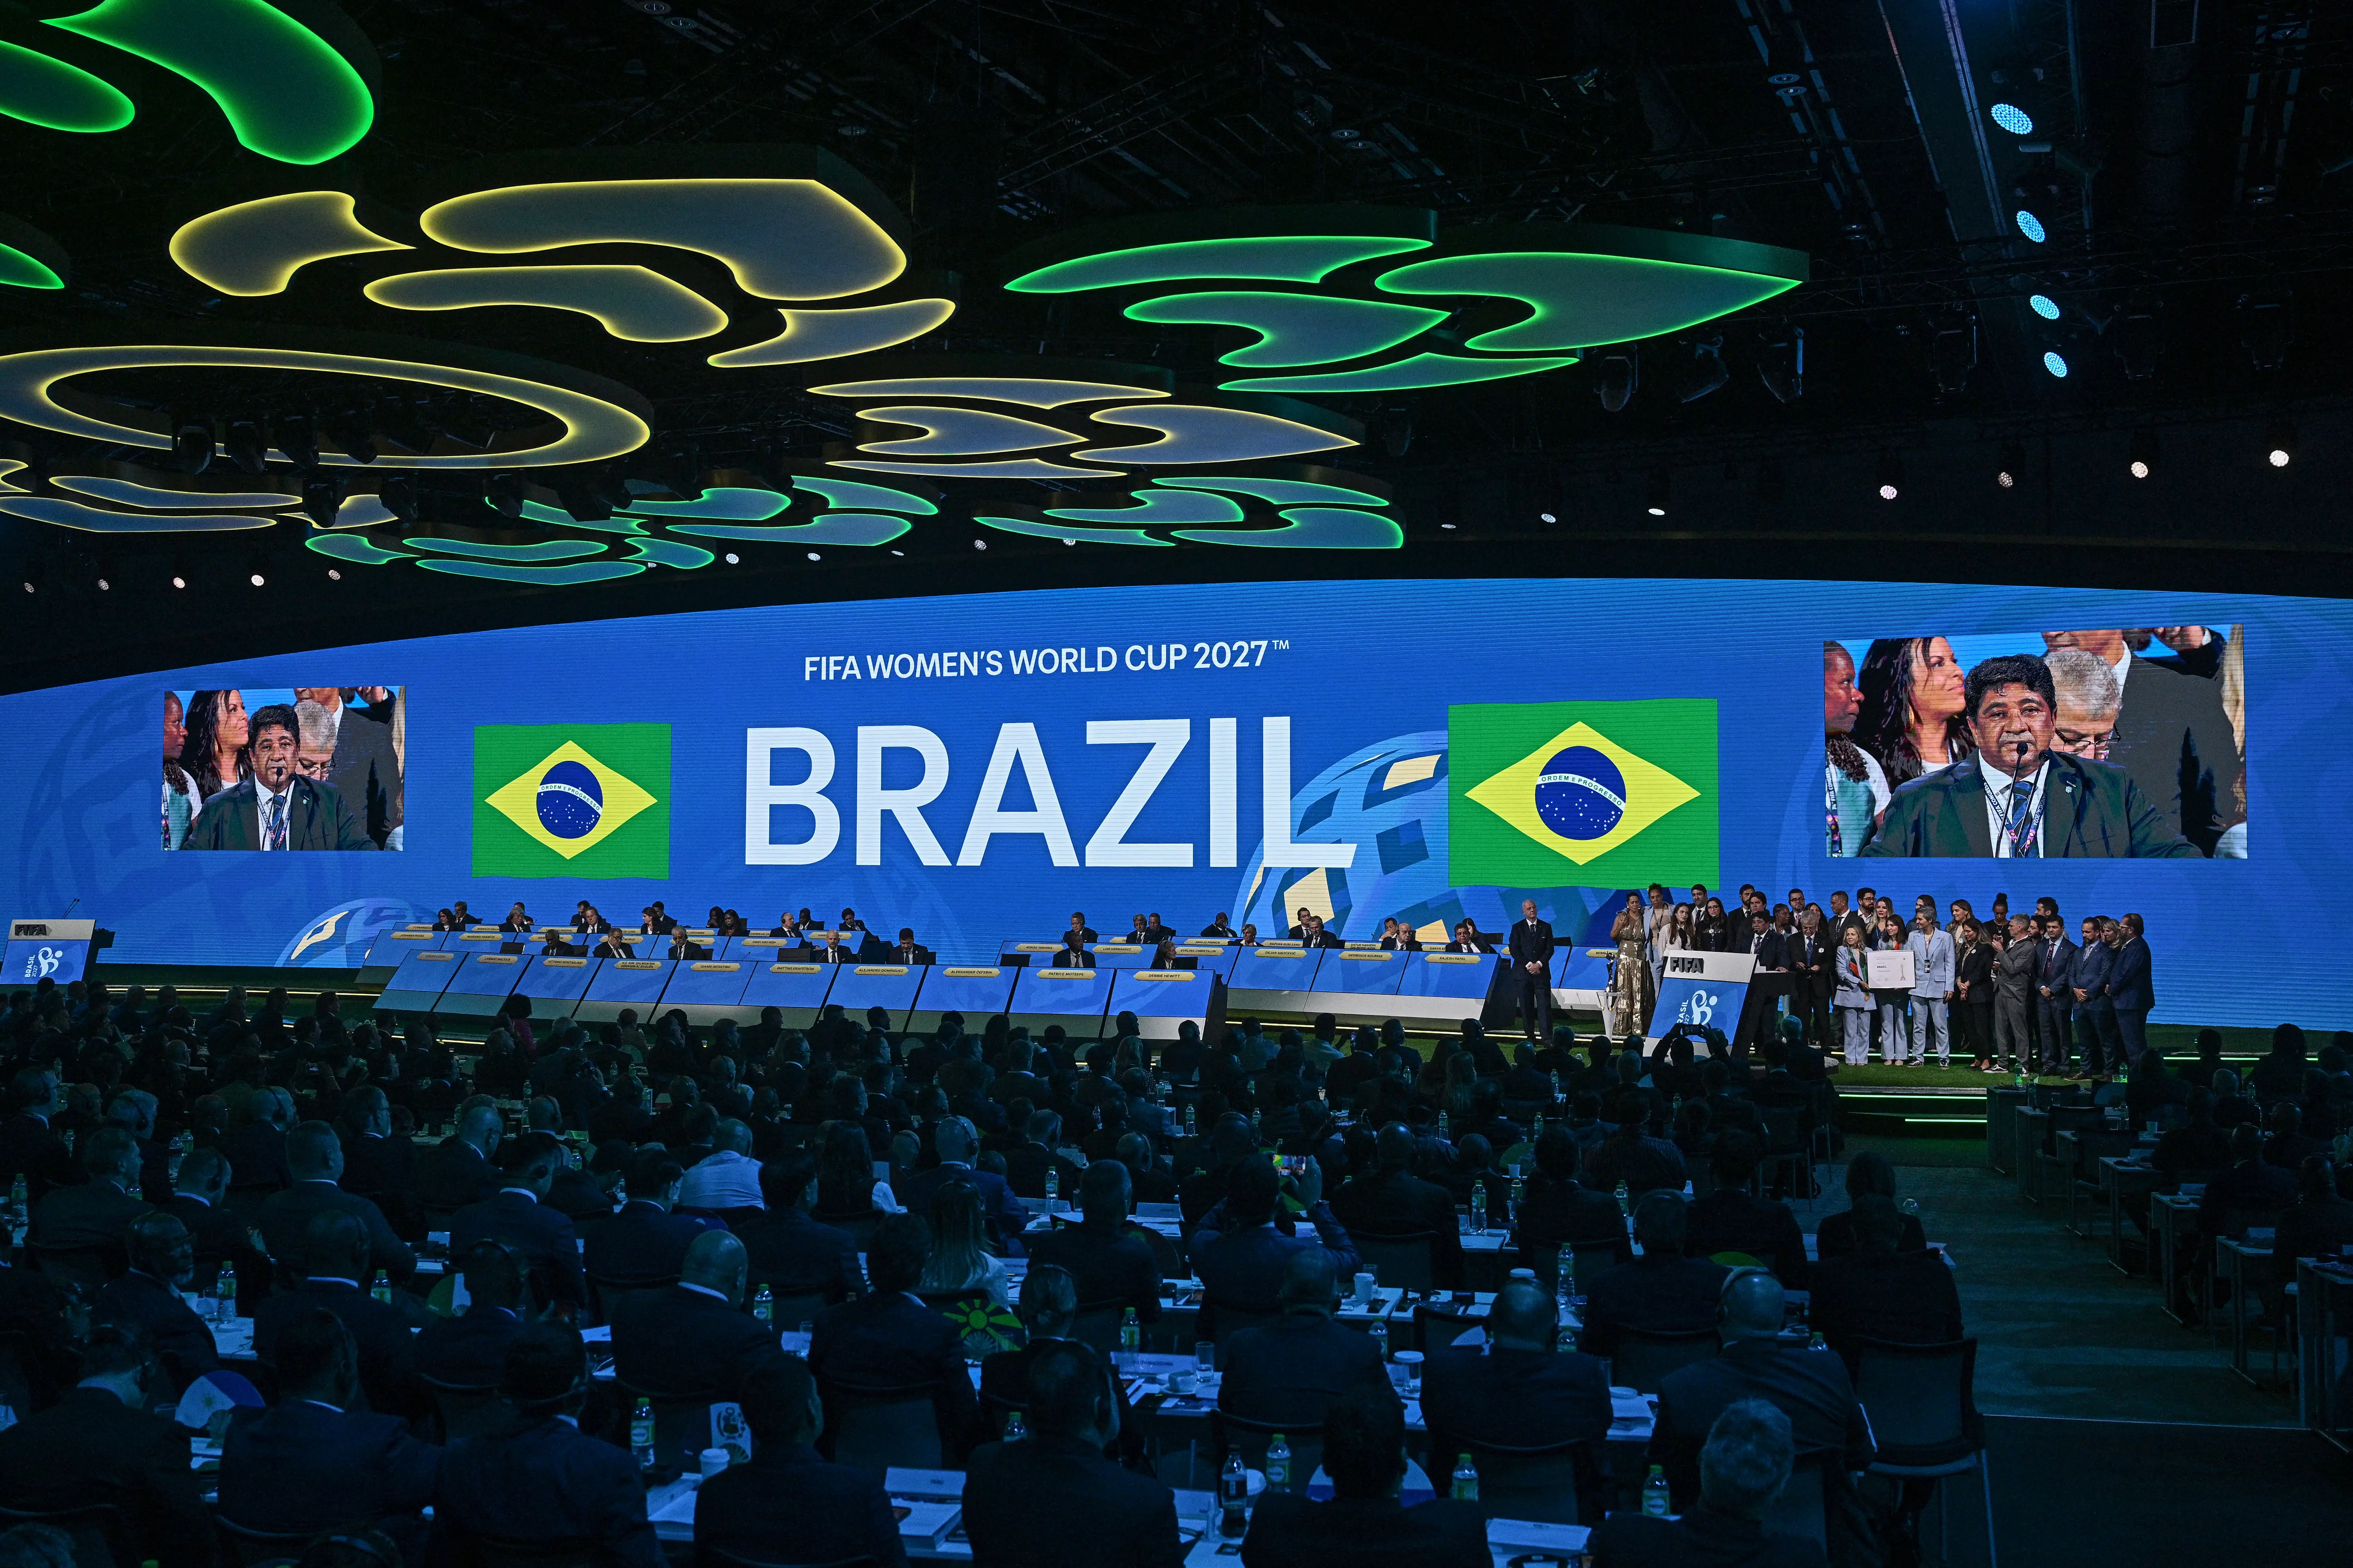 Imagem do congresso da Fifa em Bangkok, Tailândia, ao anunciar o Brasil como país-sede da Copa do Mundo Feminina de 2027